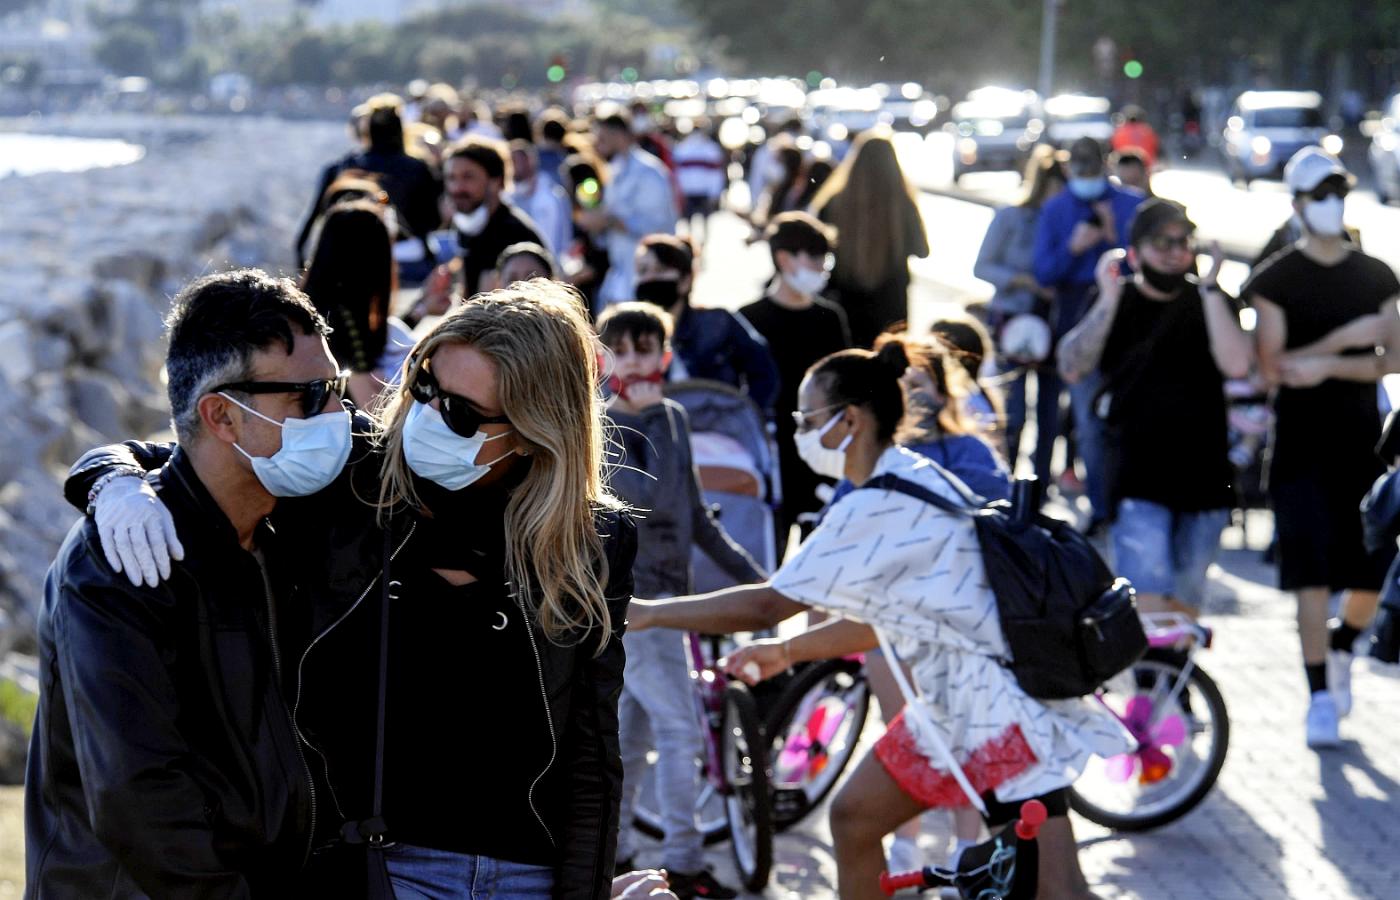 Neapol po rozluźnieniu restrykcji z powodu pandemii koronawirusa